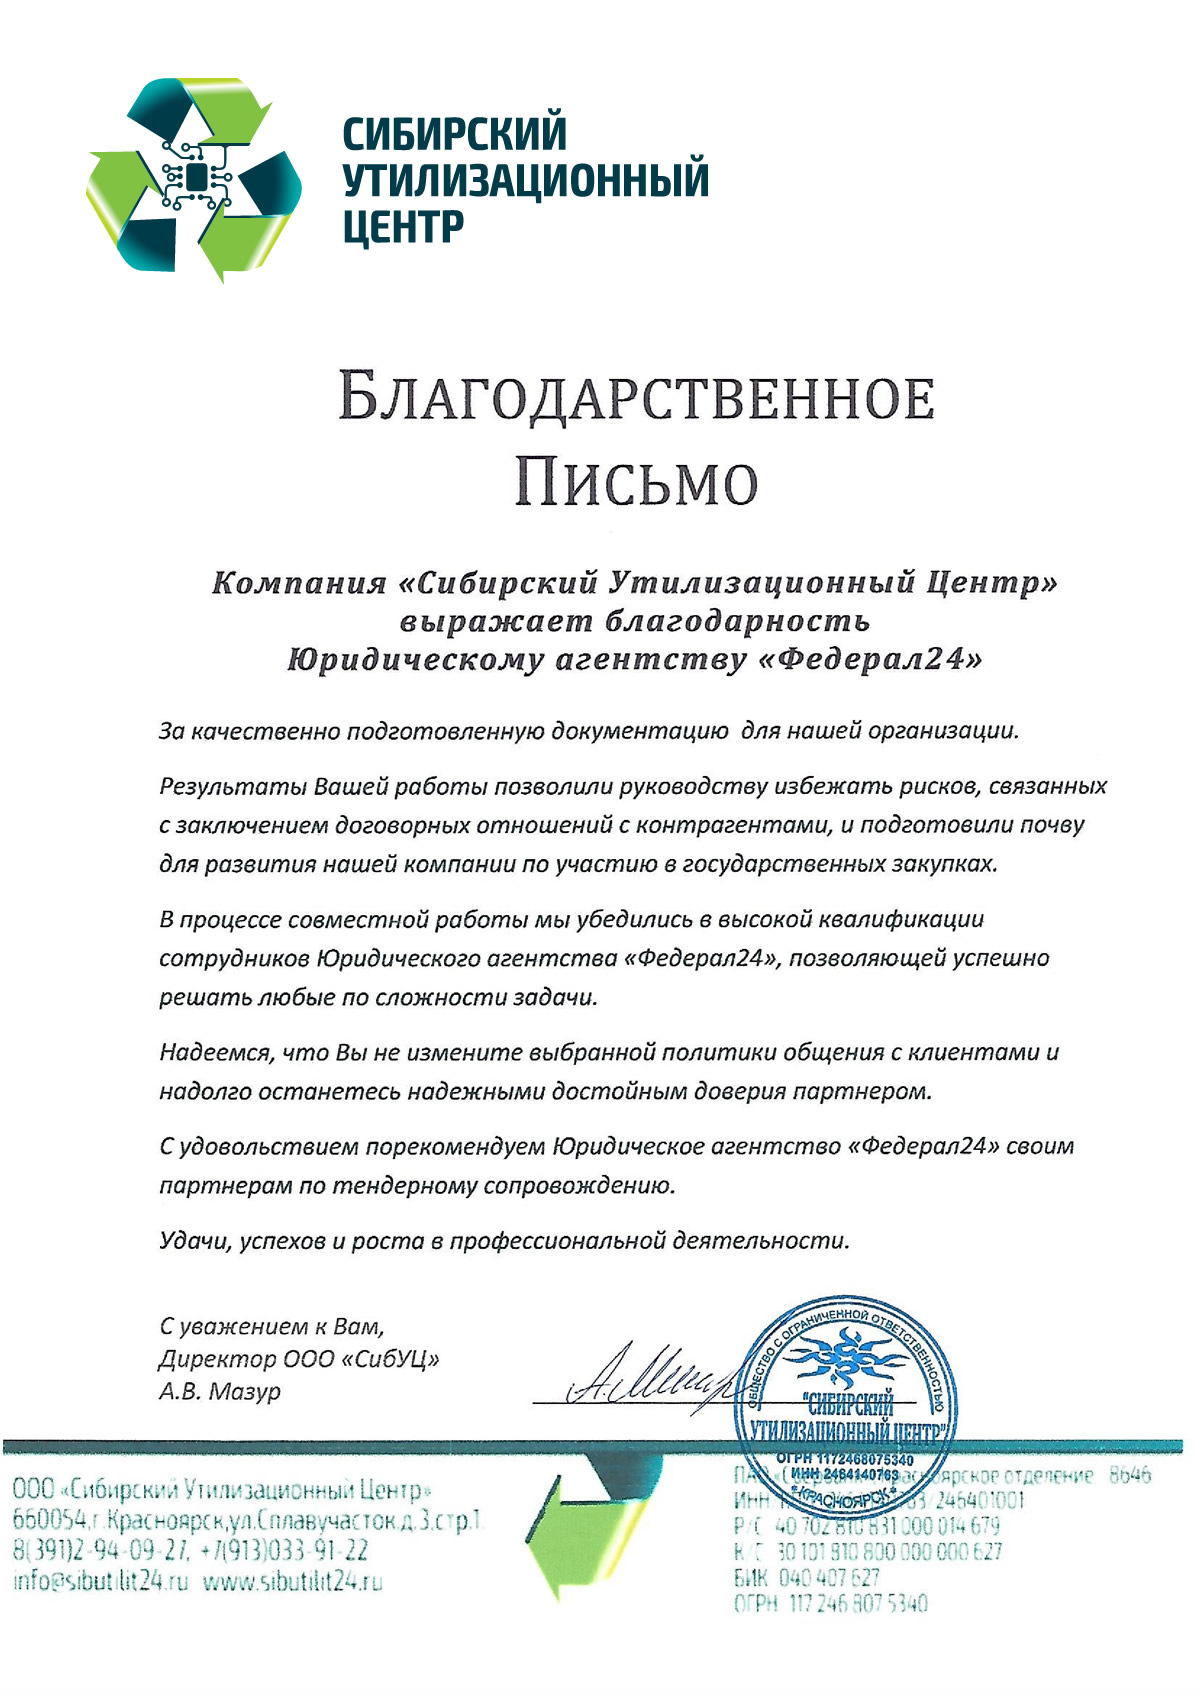 Благодарственное письмо от компании Сибирский Утилизационный Центр